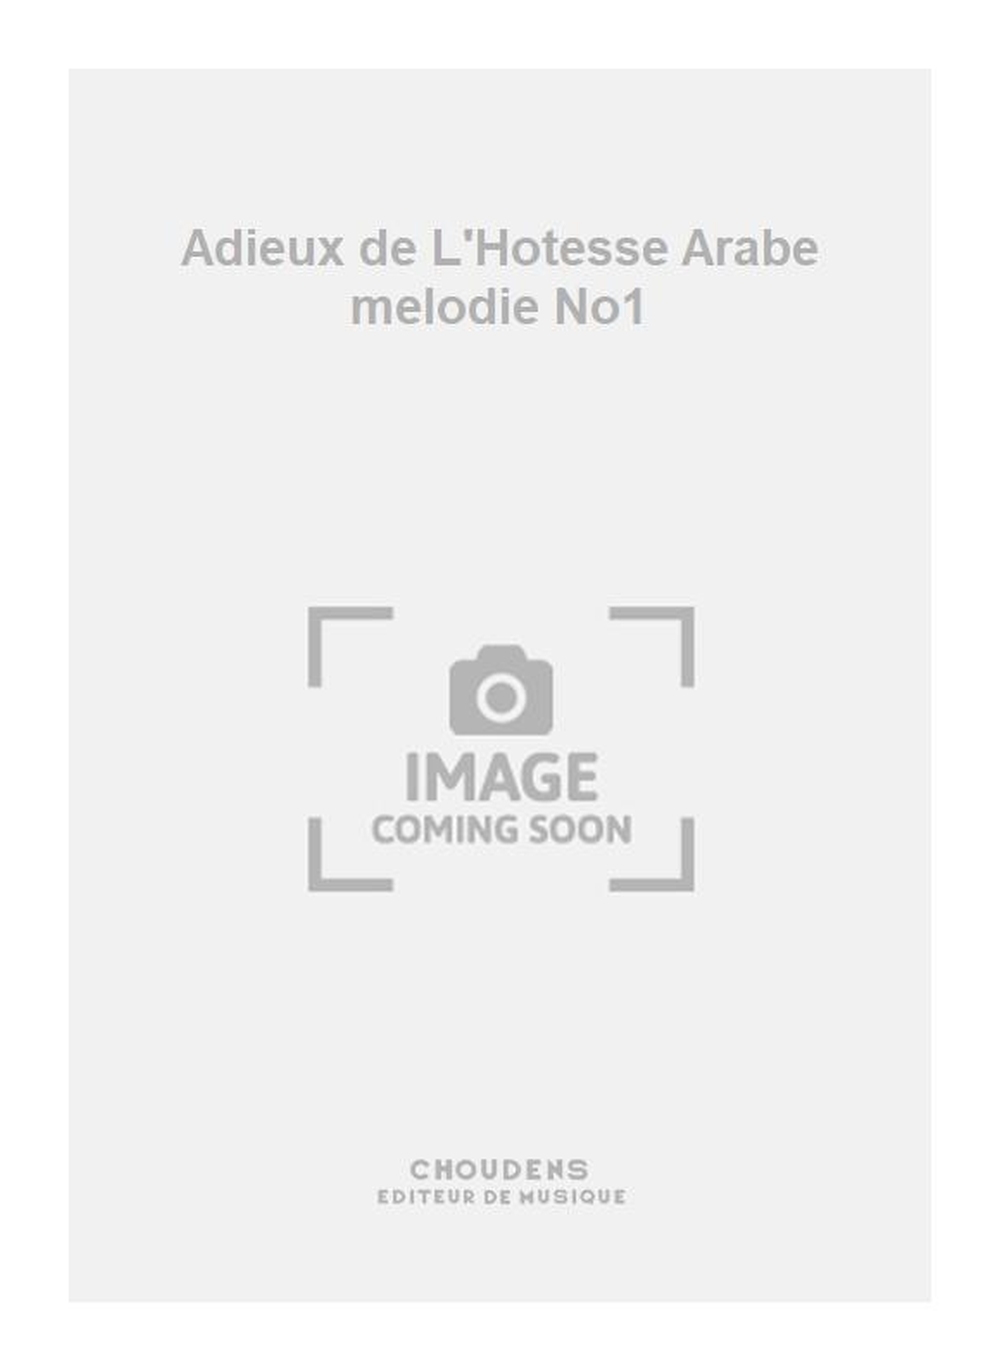 Georges Bizet: Adieux de L'Hotesse Arabe melodie No1